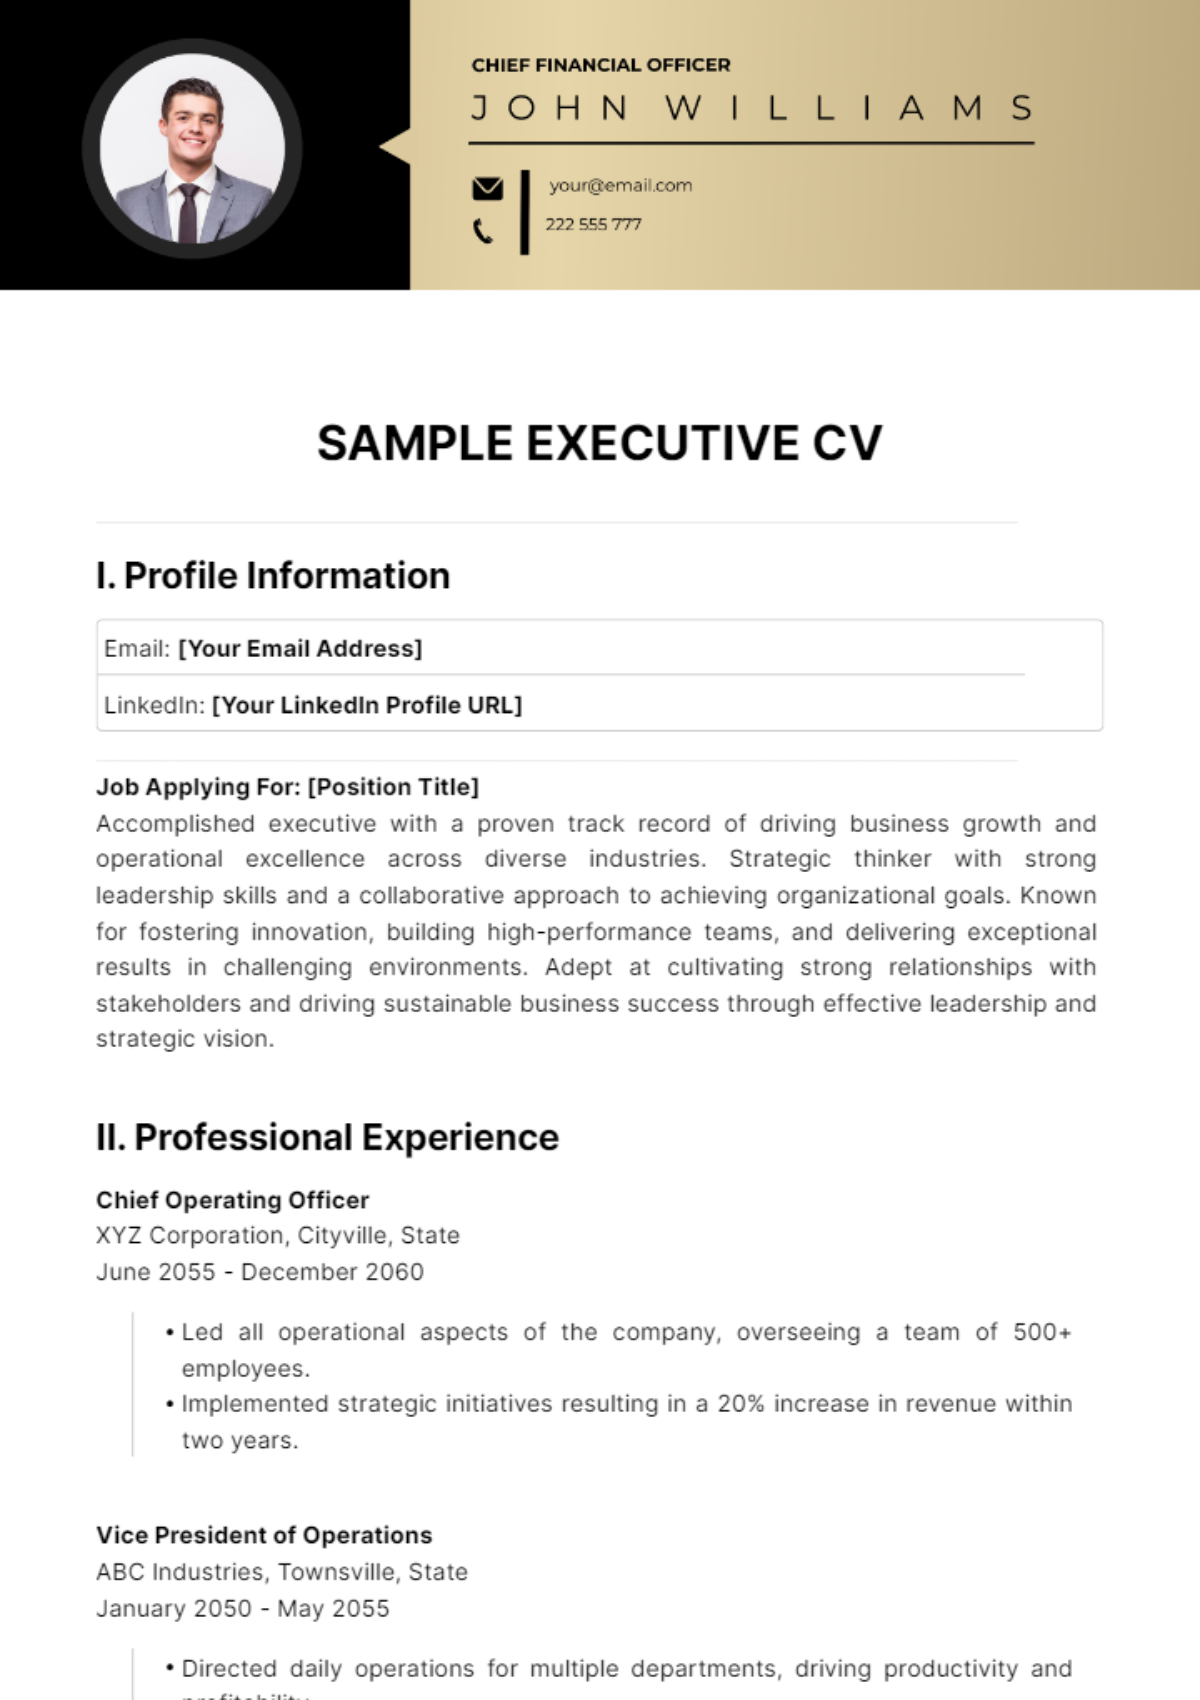 Sample Executive CV Template